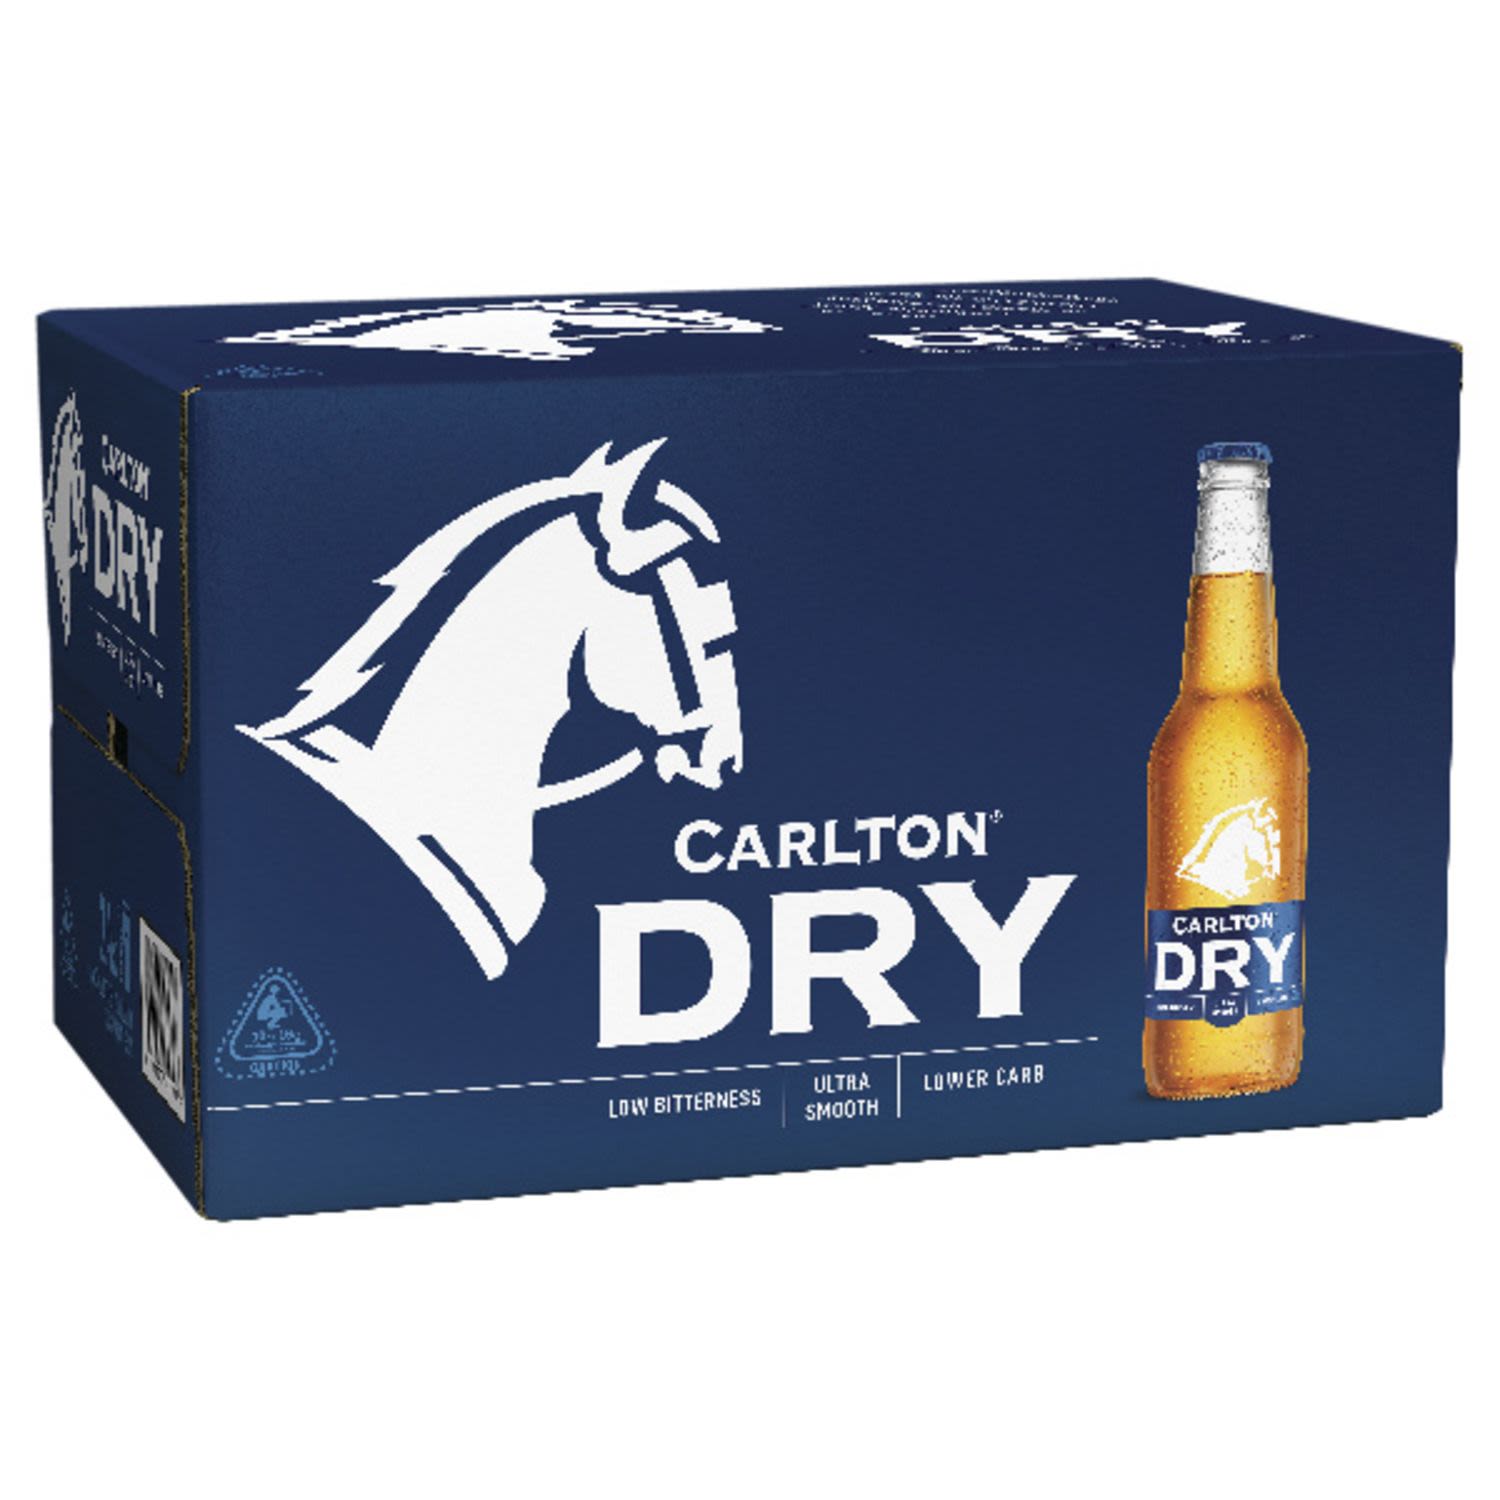 Carlton Dry Bottle 330mL 24 Pack